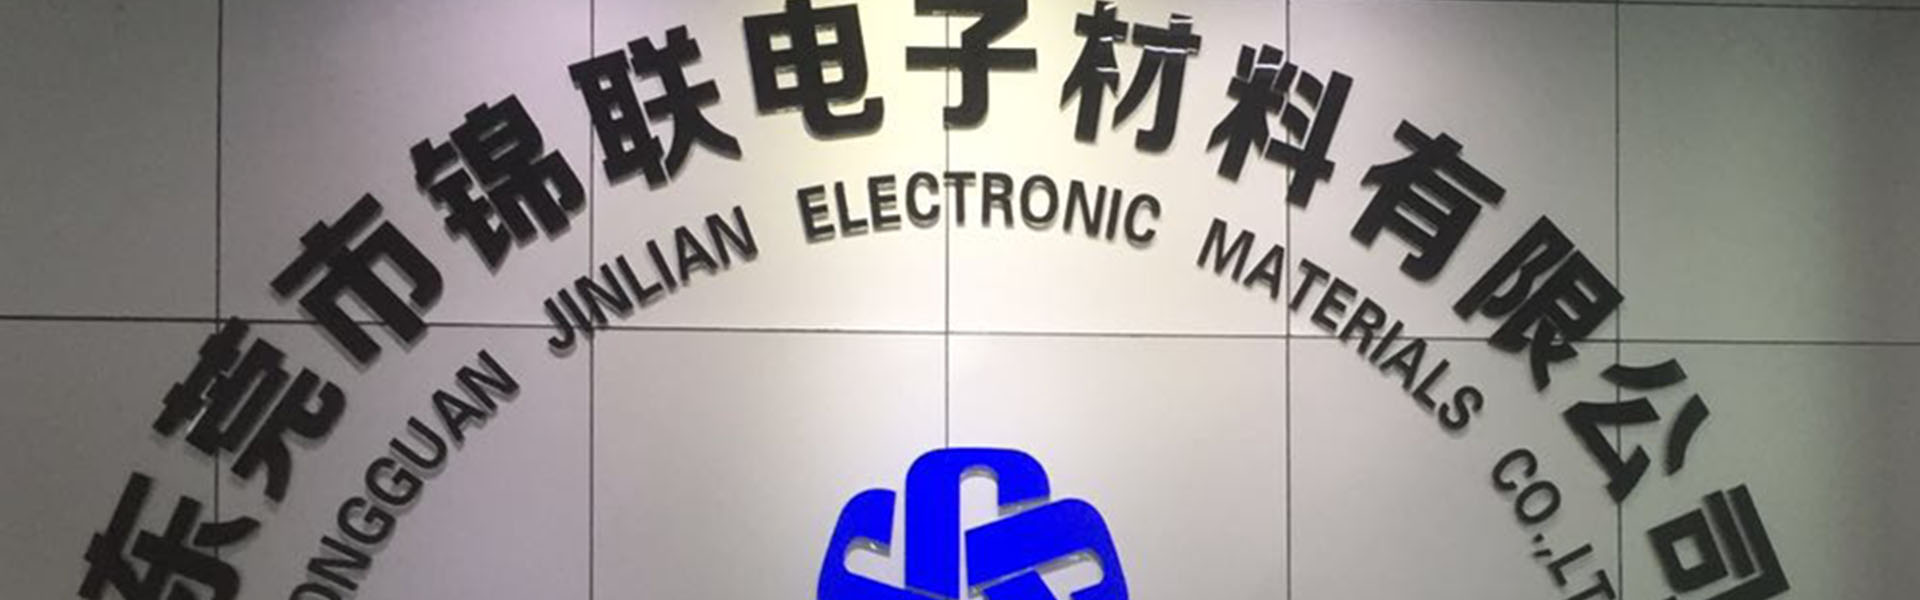 กล่องแผลพุพองถาดเทปผู้ให้บริการ,Dongguan Jinlian Electronic Materials Co., Ltd